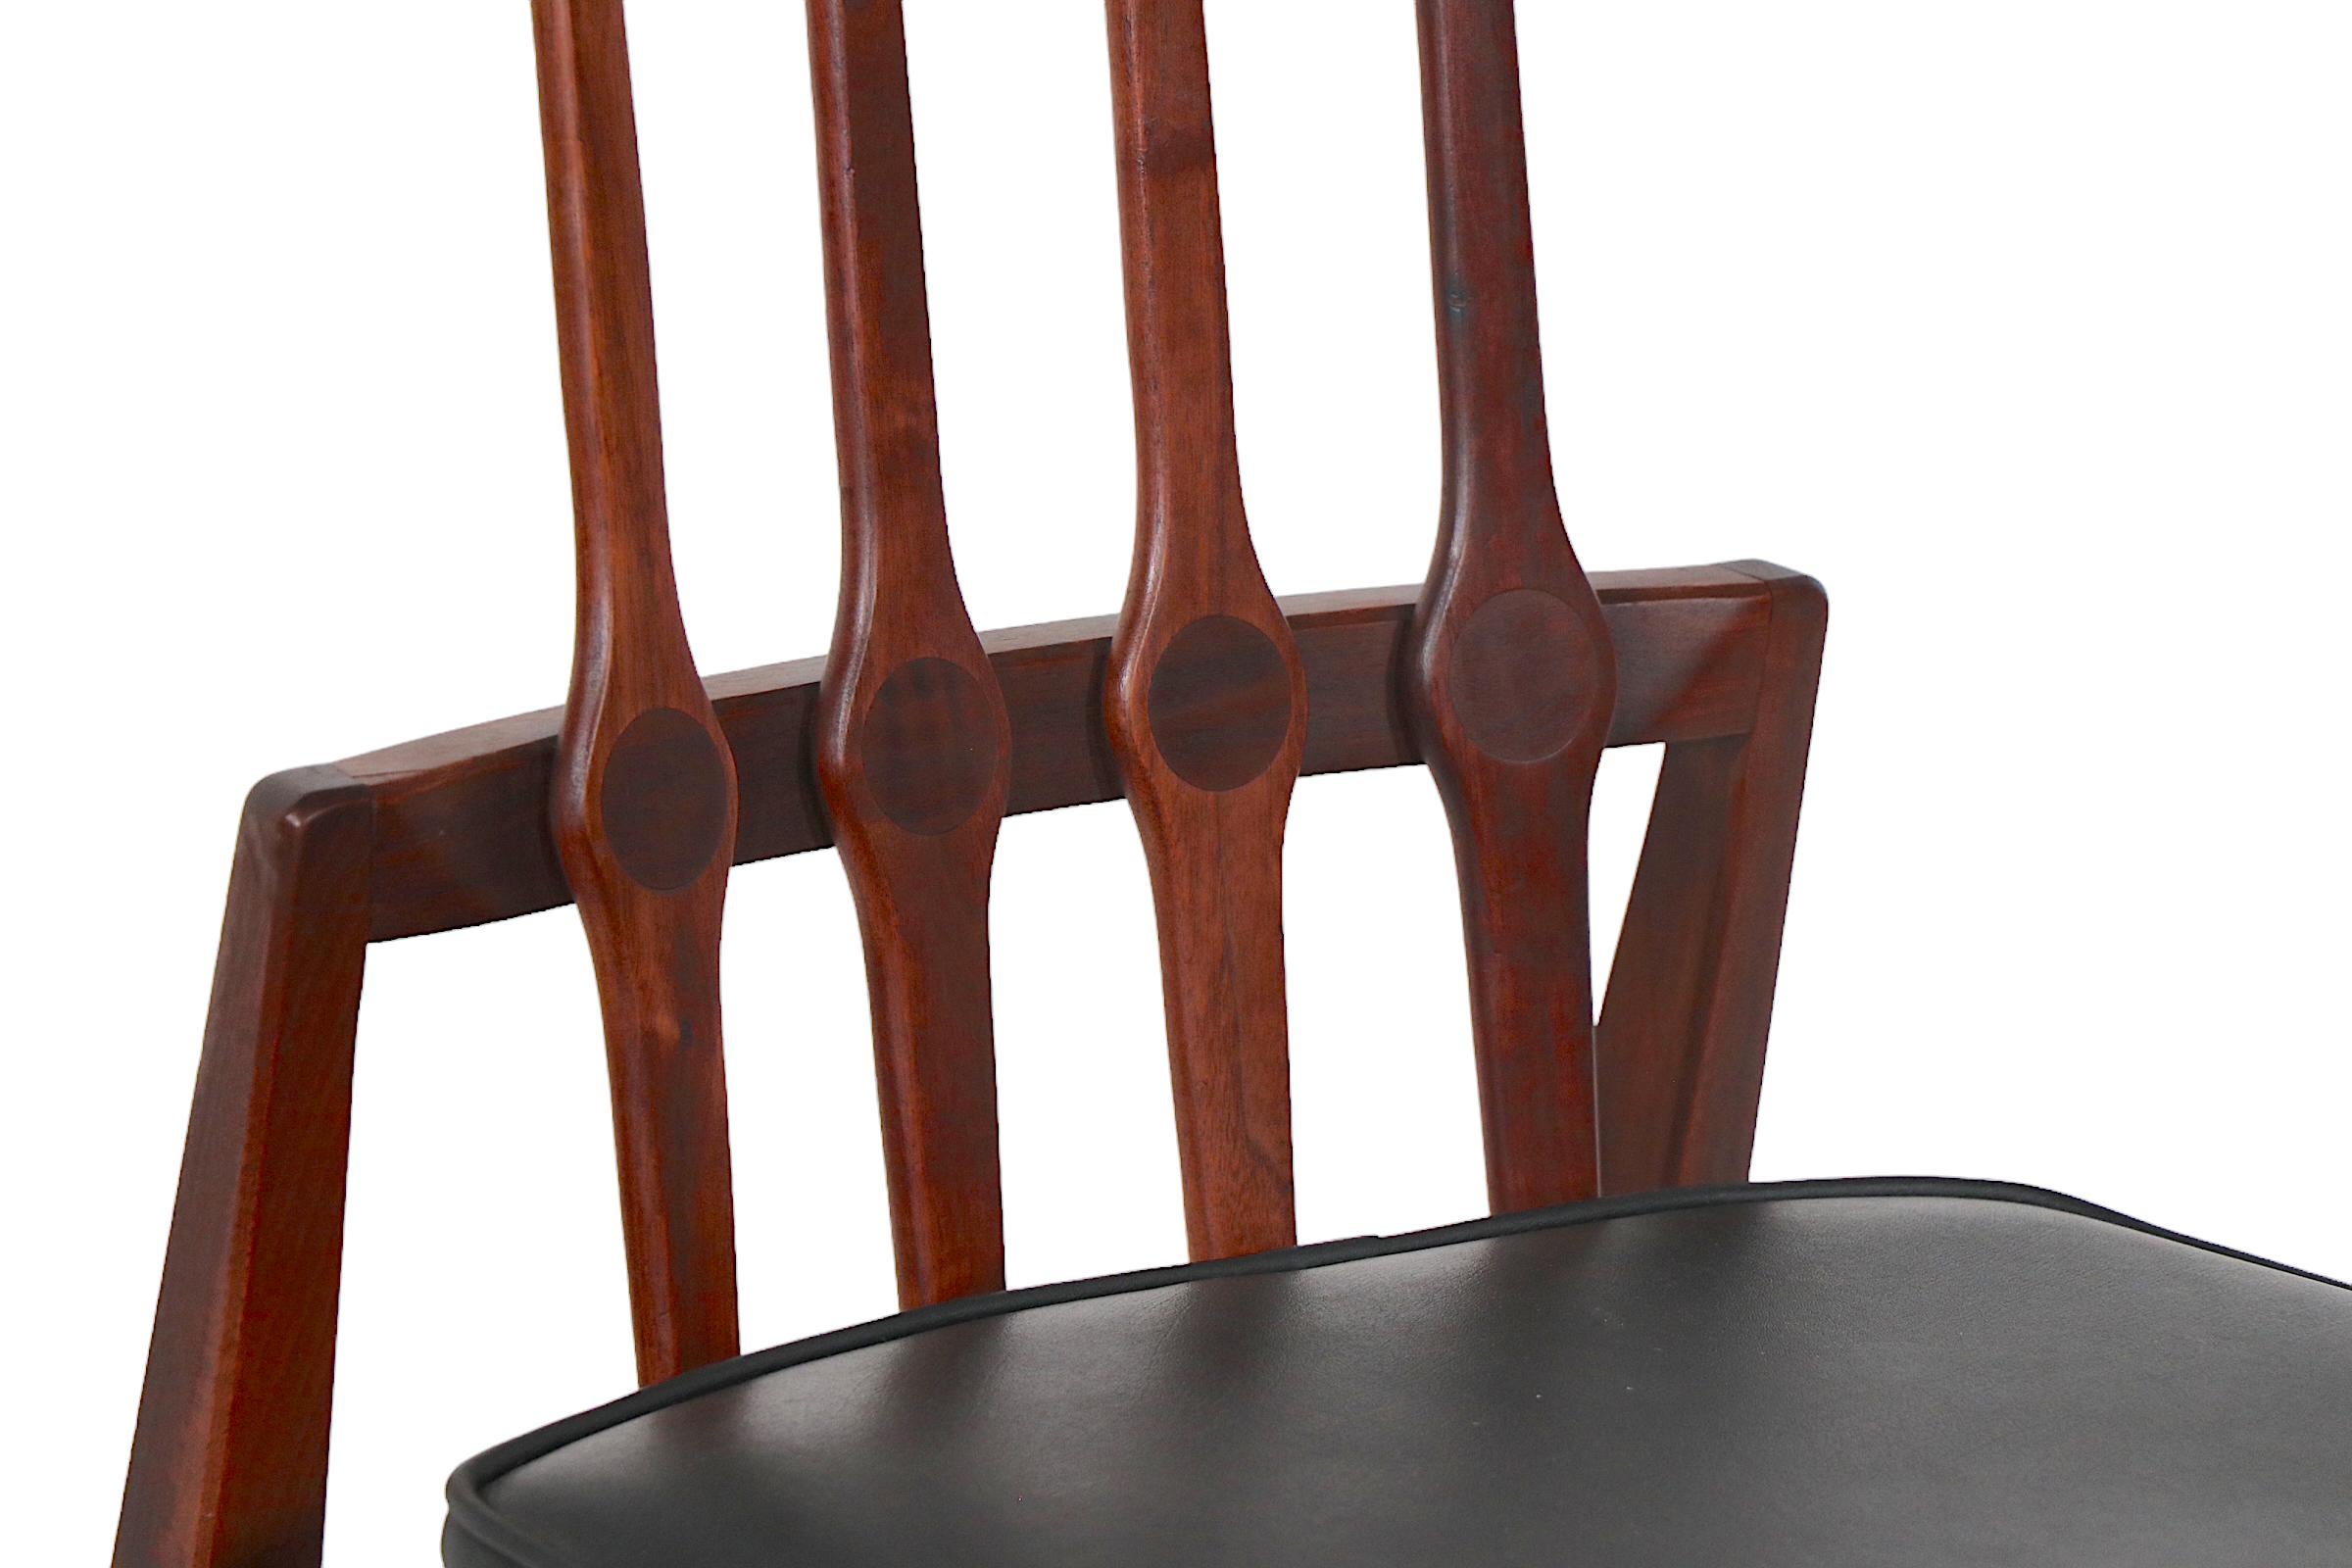 Ensemble architectural chic de chaises de salle à manger vintage du milieu du siècle, conçu par Foster-McDavid. Les chaises présentent une interprétation moderniste de la forme classique du dossier en peigne antique, avec d'élégants supports de